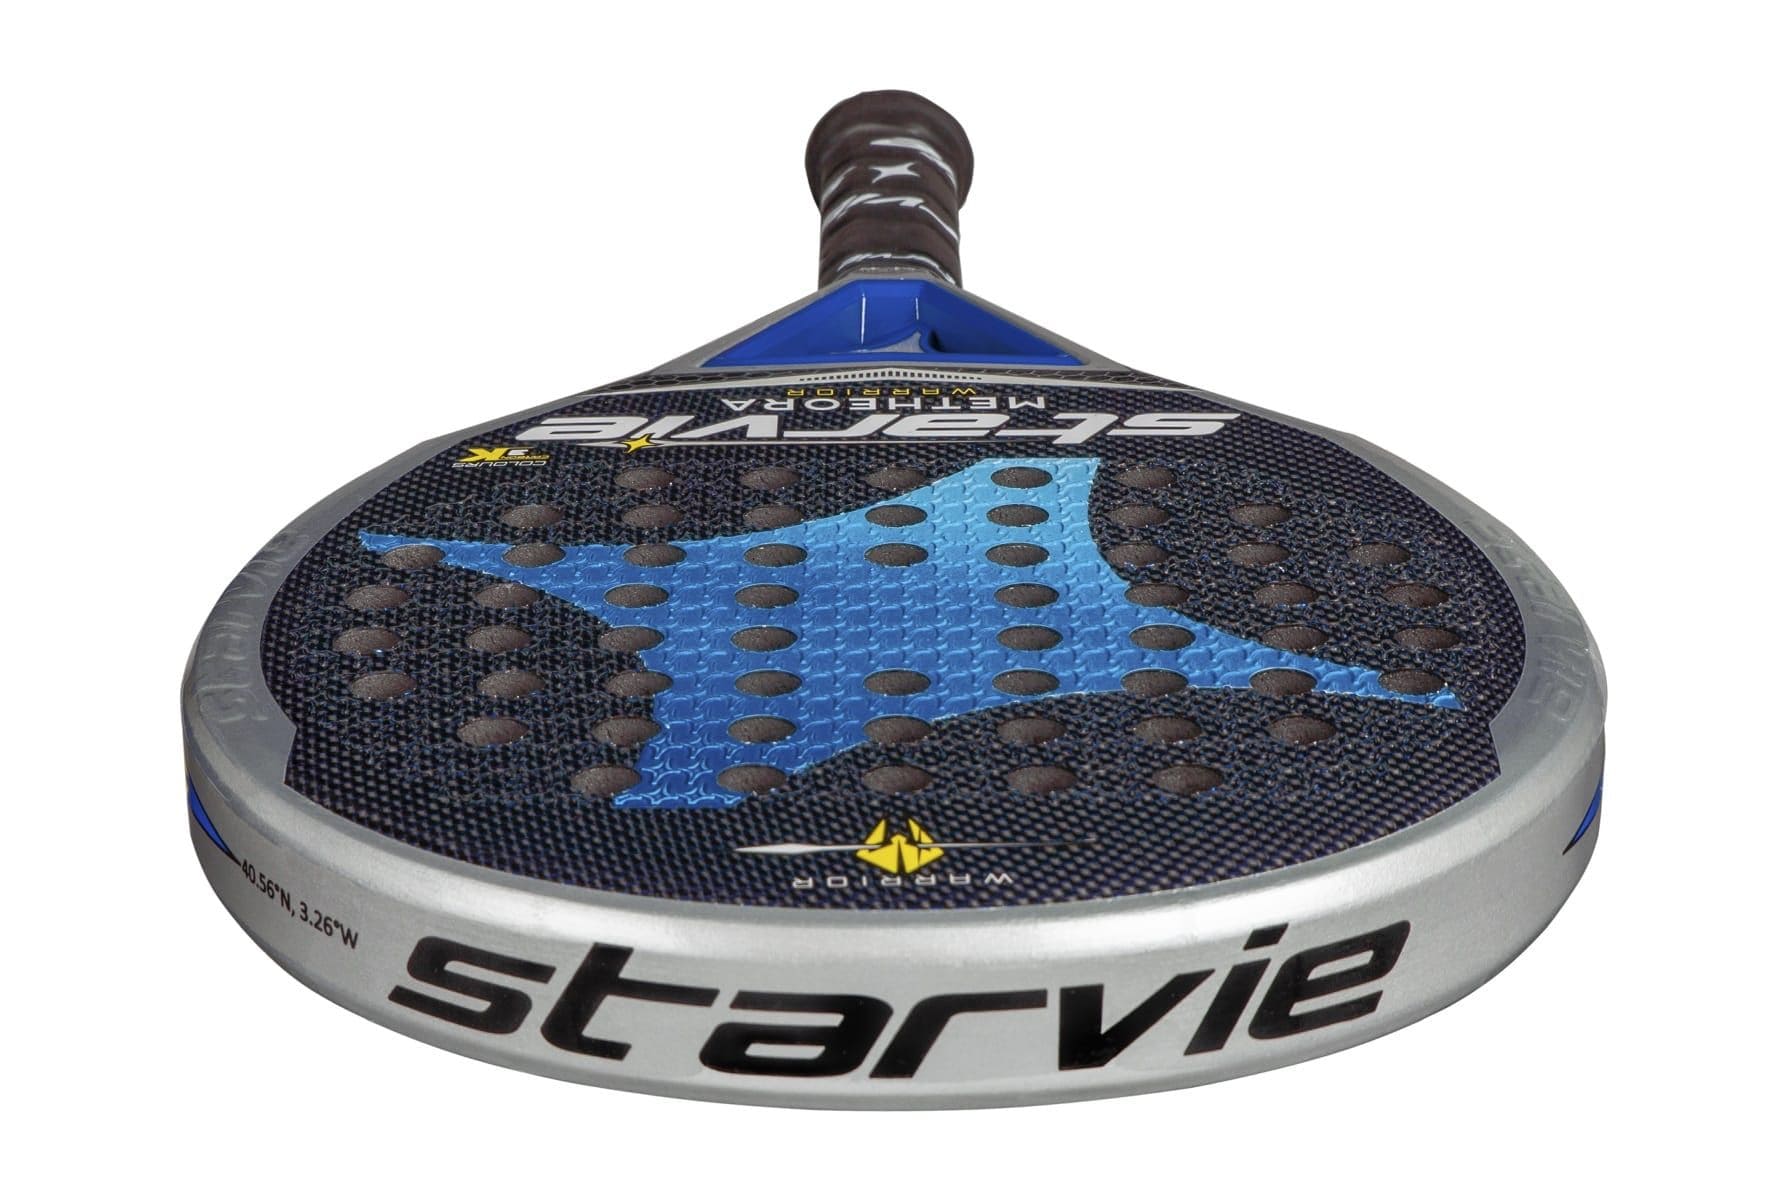 Starvie Metheora Warrior padel racket